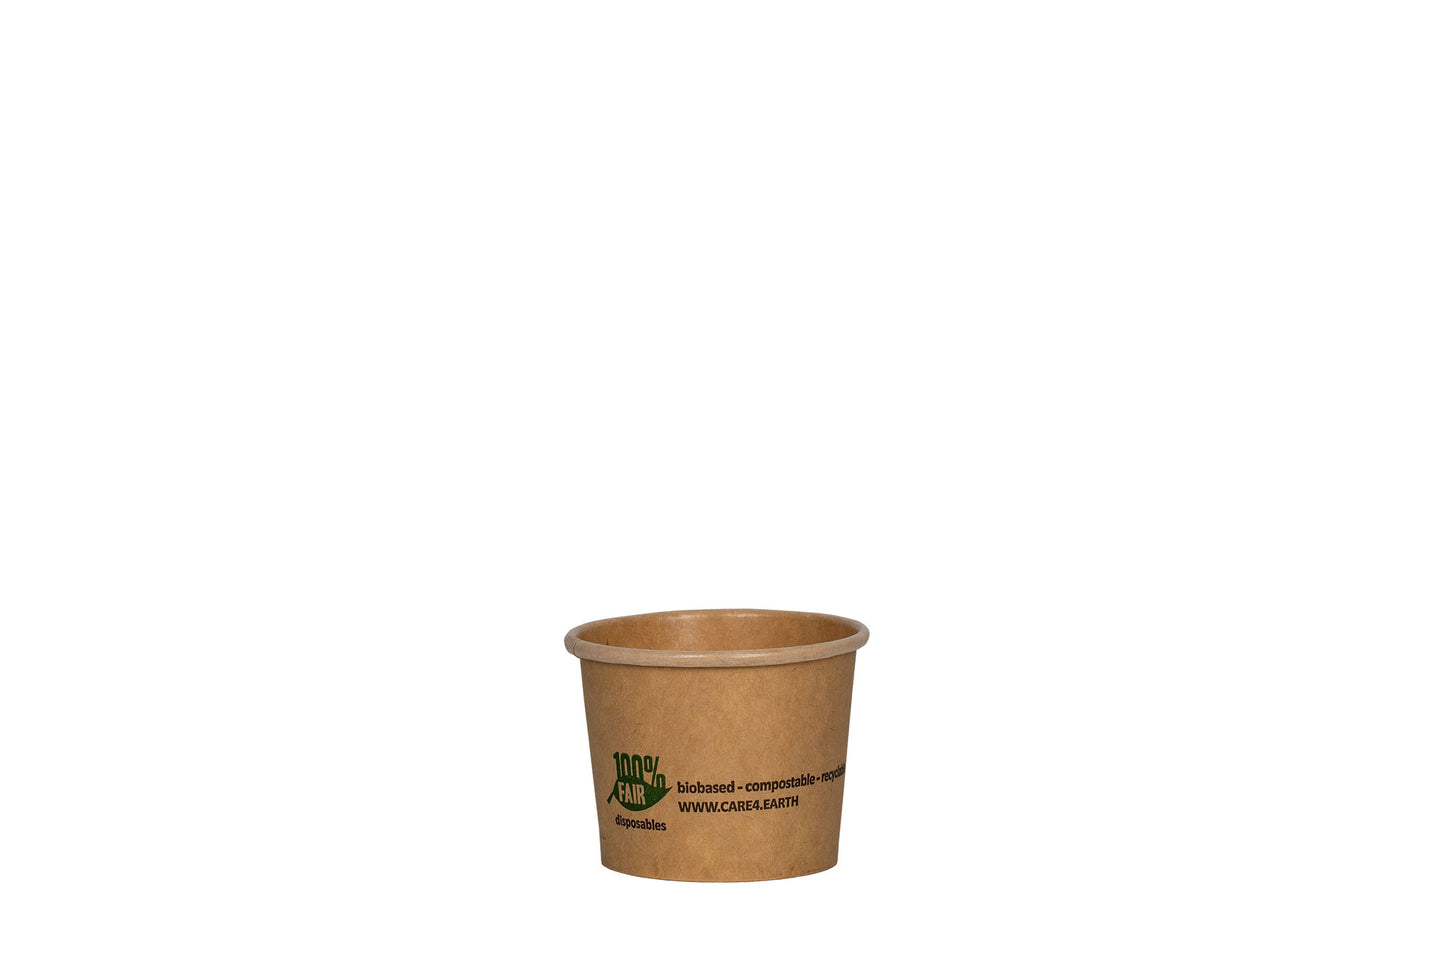 Soßen- und Dippbecher, Pappe, braun, rund, 60 ml, 2oz, ⌀ 6,1 cm, Höhe 4,8 cm, kompostierbar nach DIN EN 13432